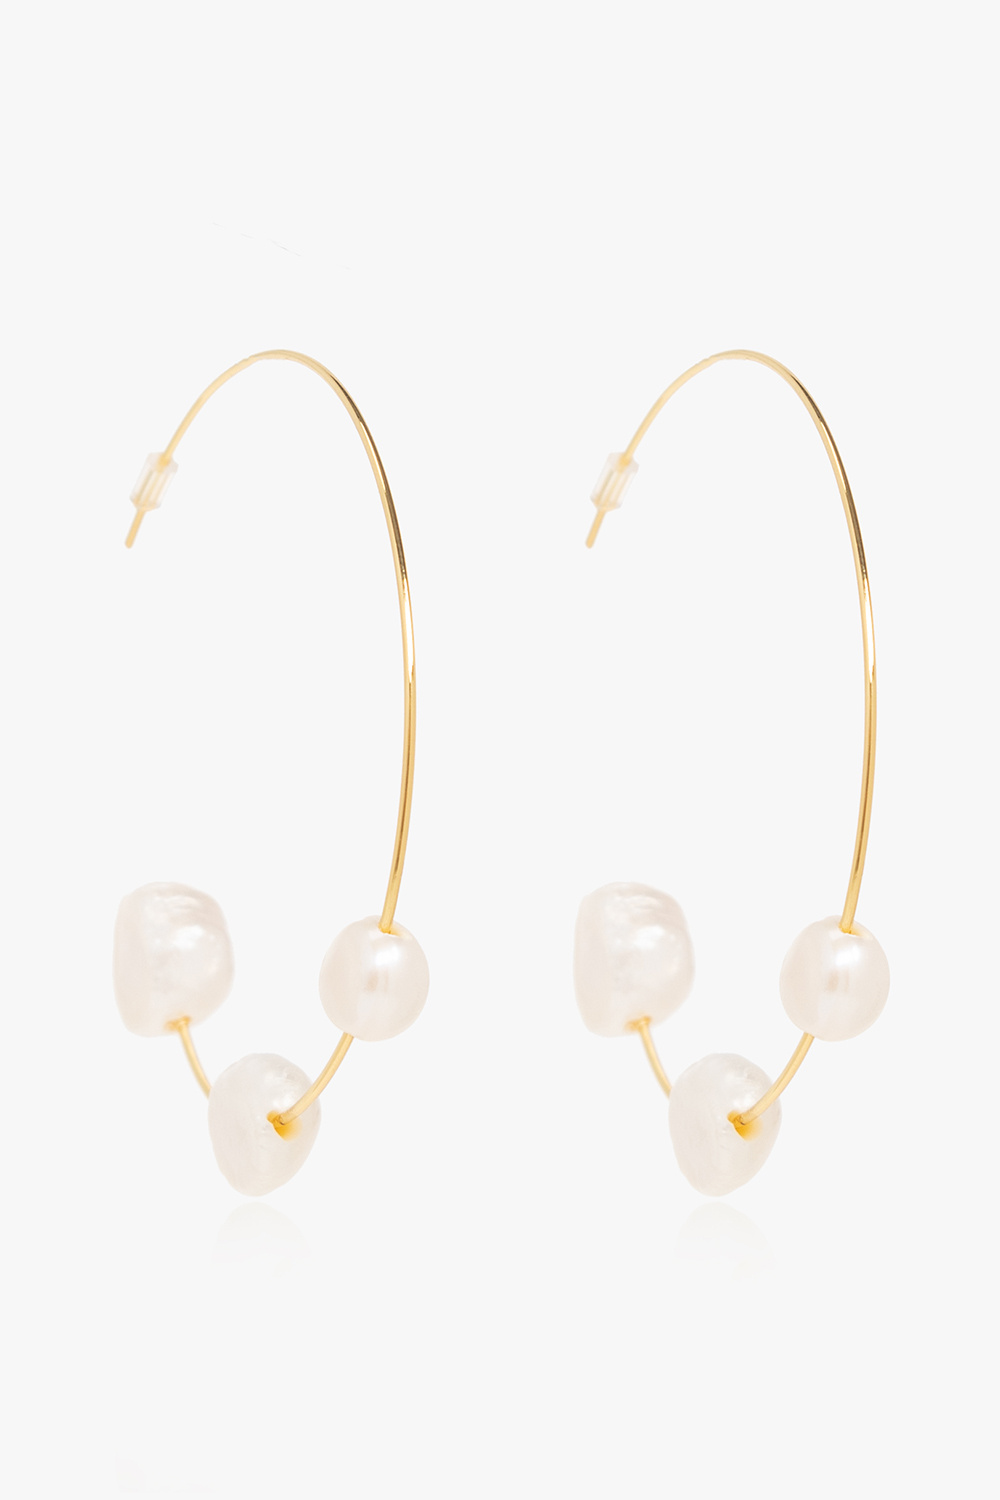 Cult Gaia ‘Nubia’ hoop earrings